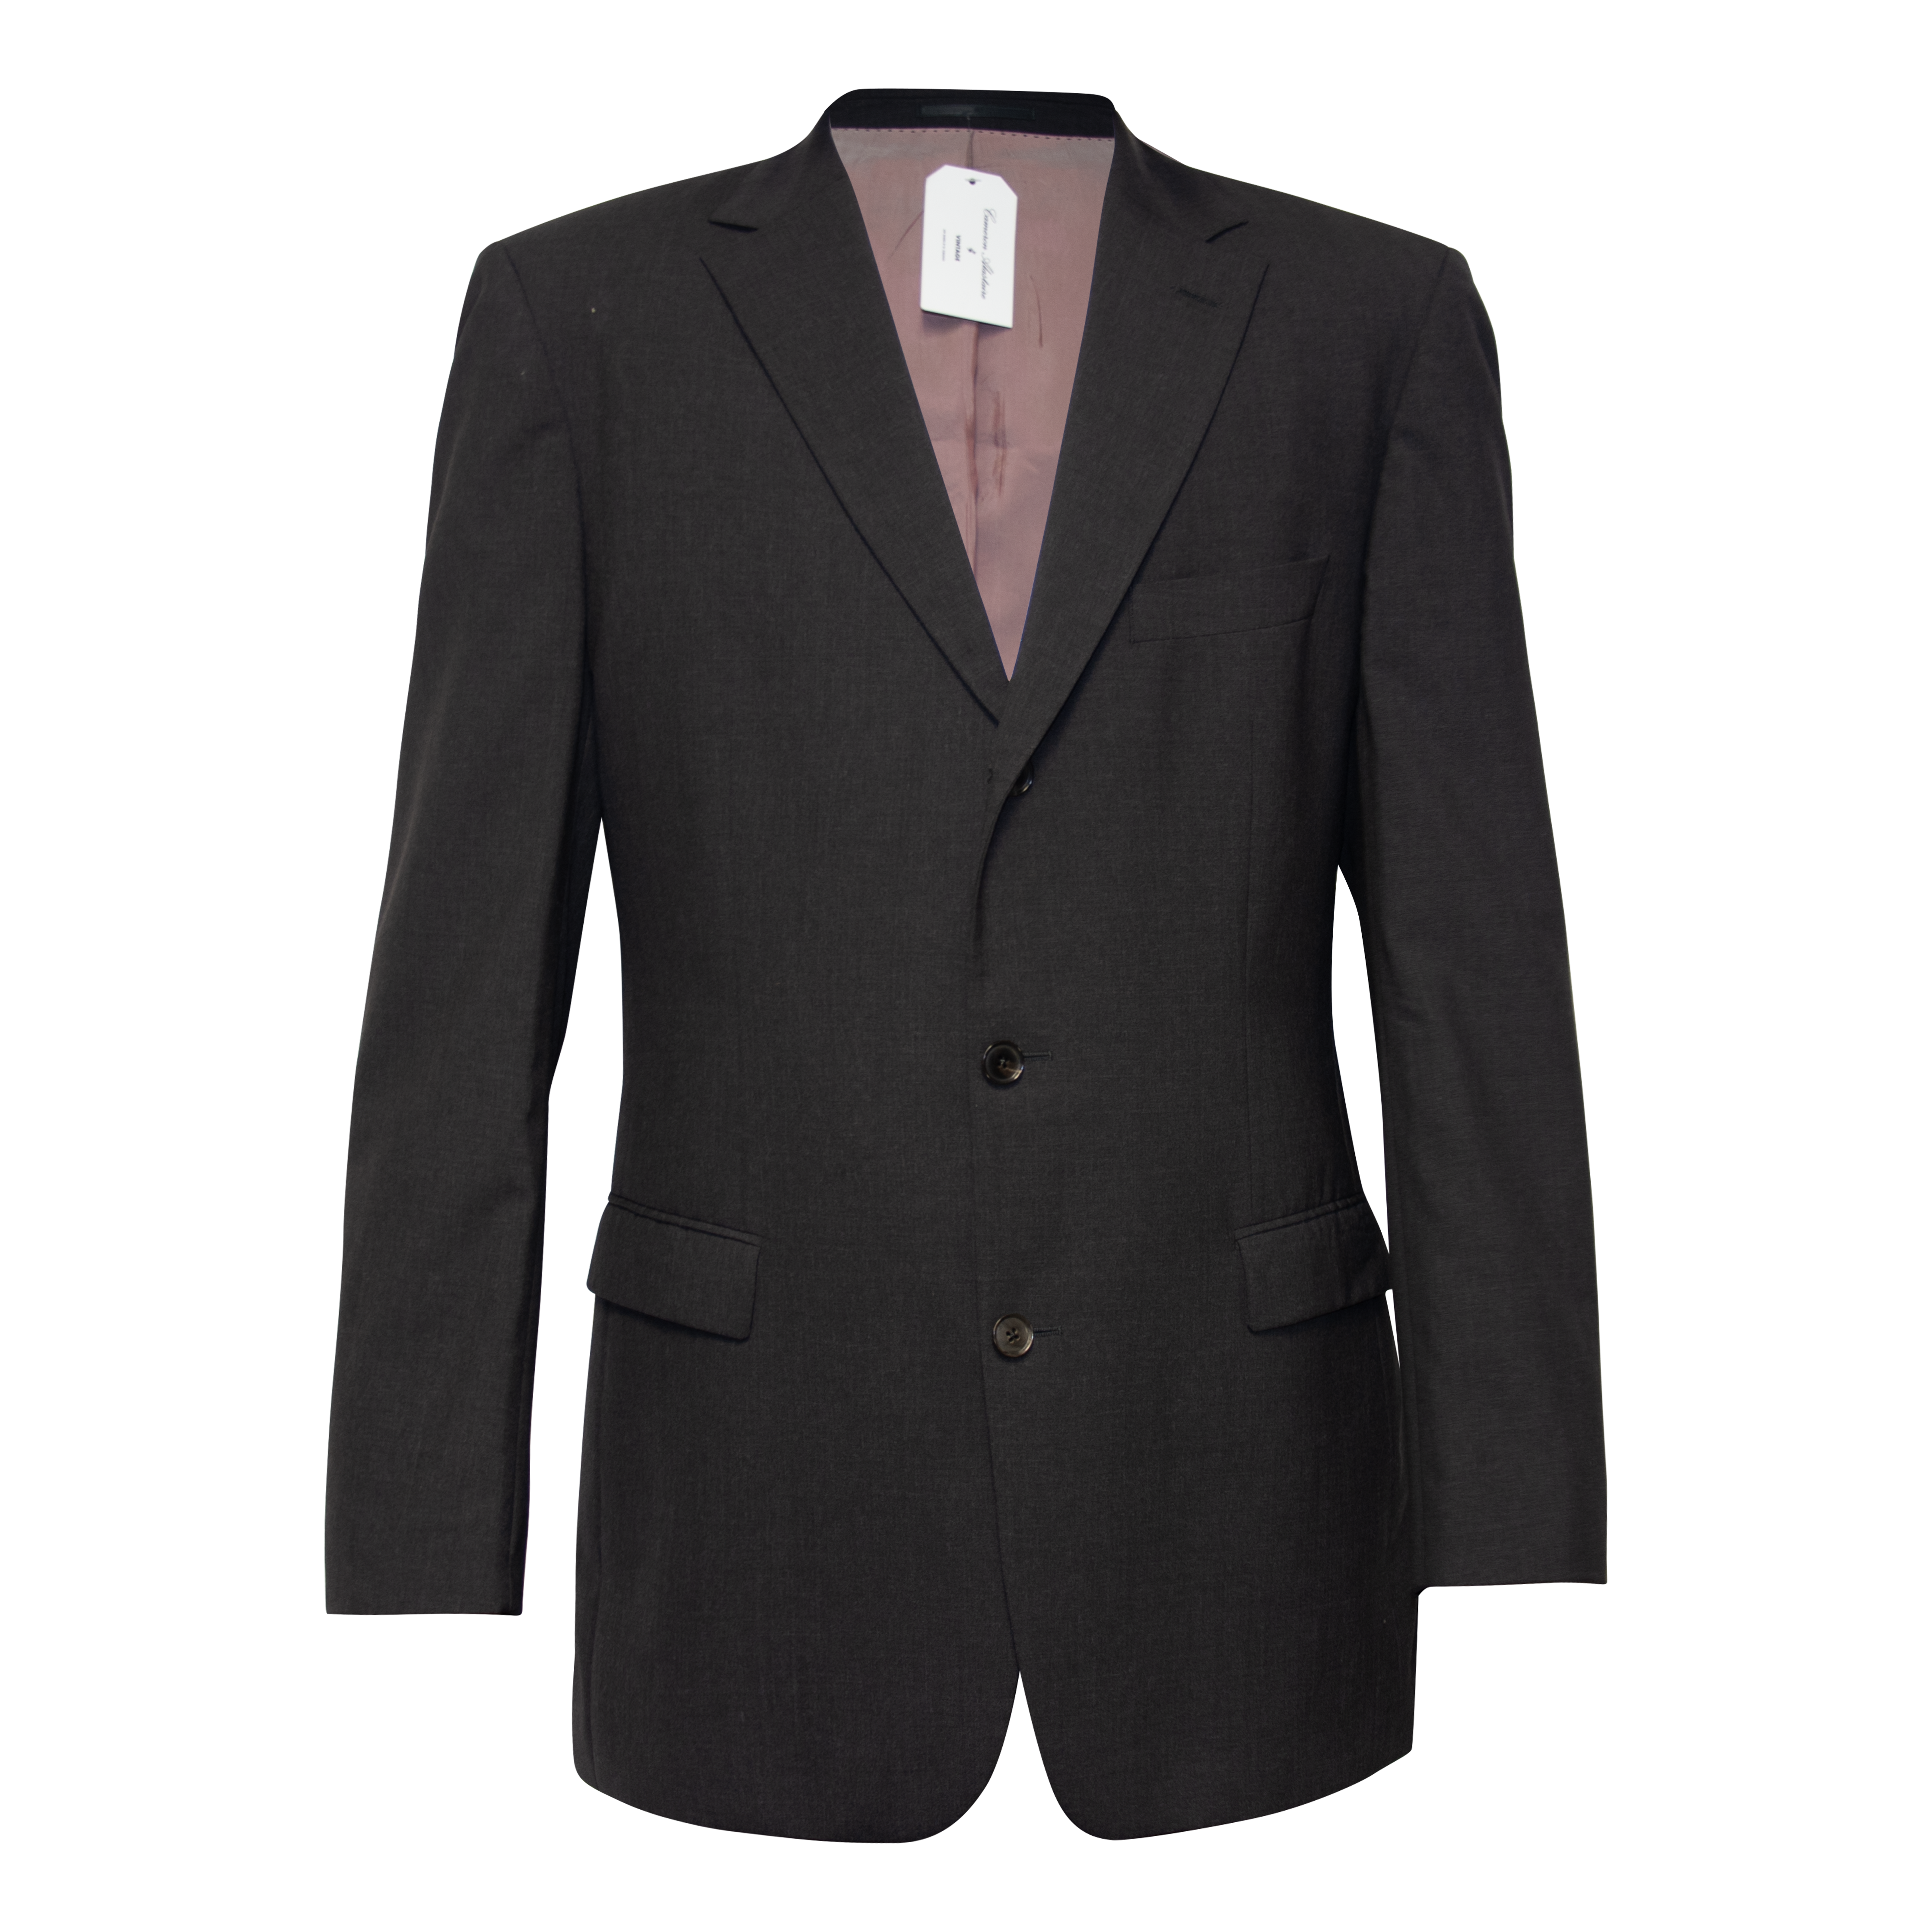 Boss Hugo Boss Charcoal Grey Suit Jacket